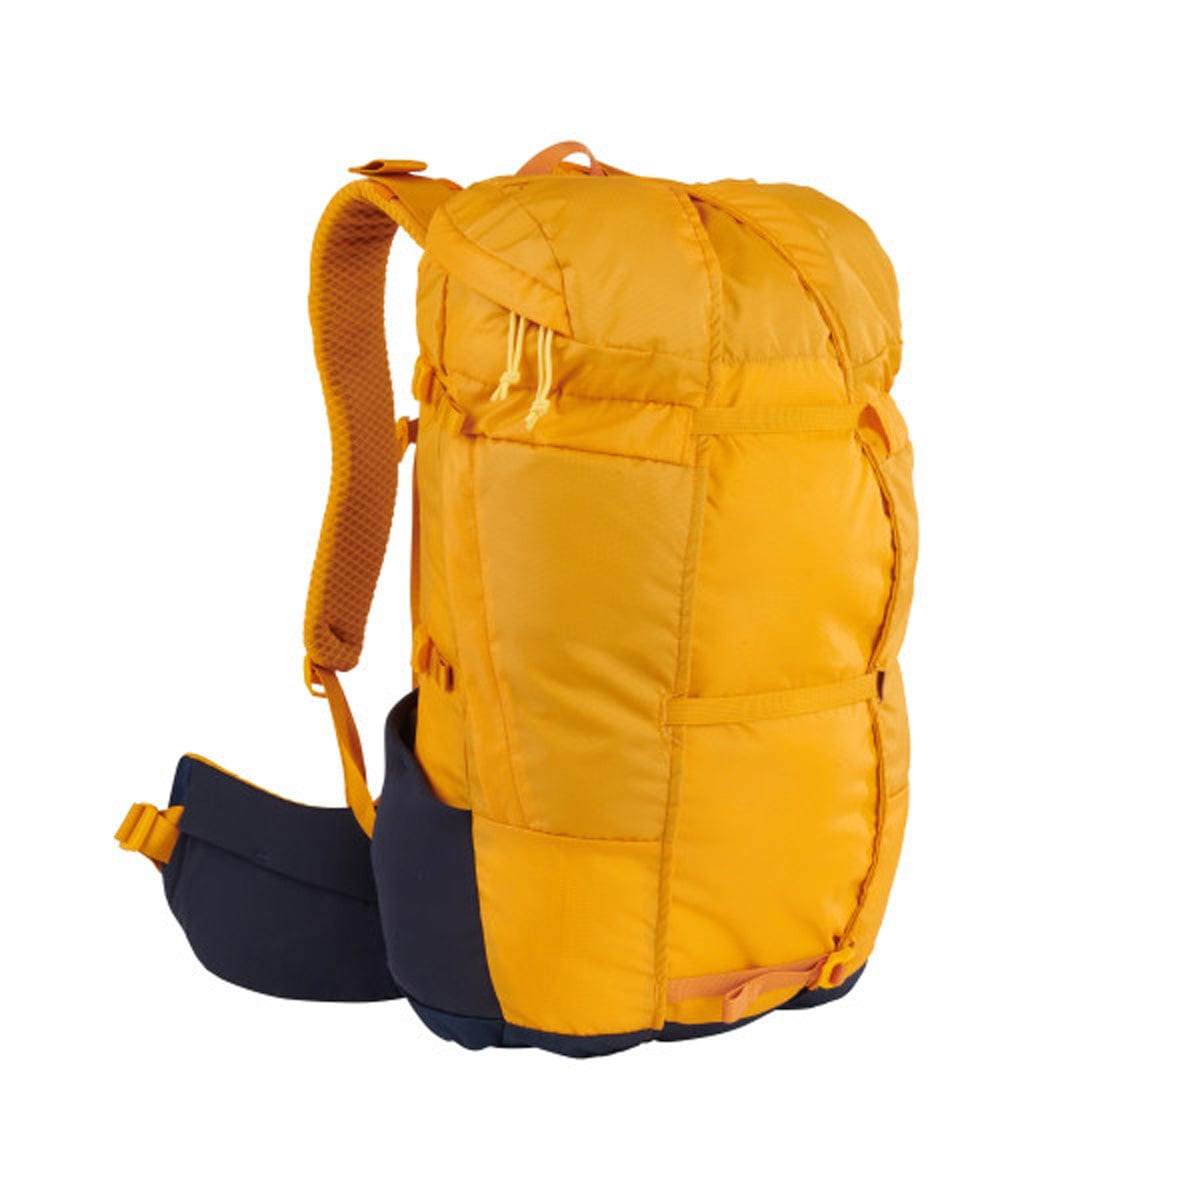 Sierra Designs Flex Hike 20L-30L Backpack, Peat/Fiery Red